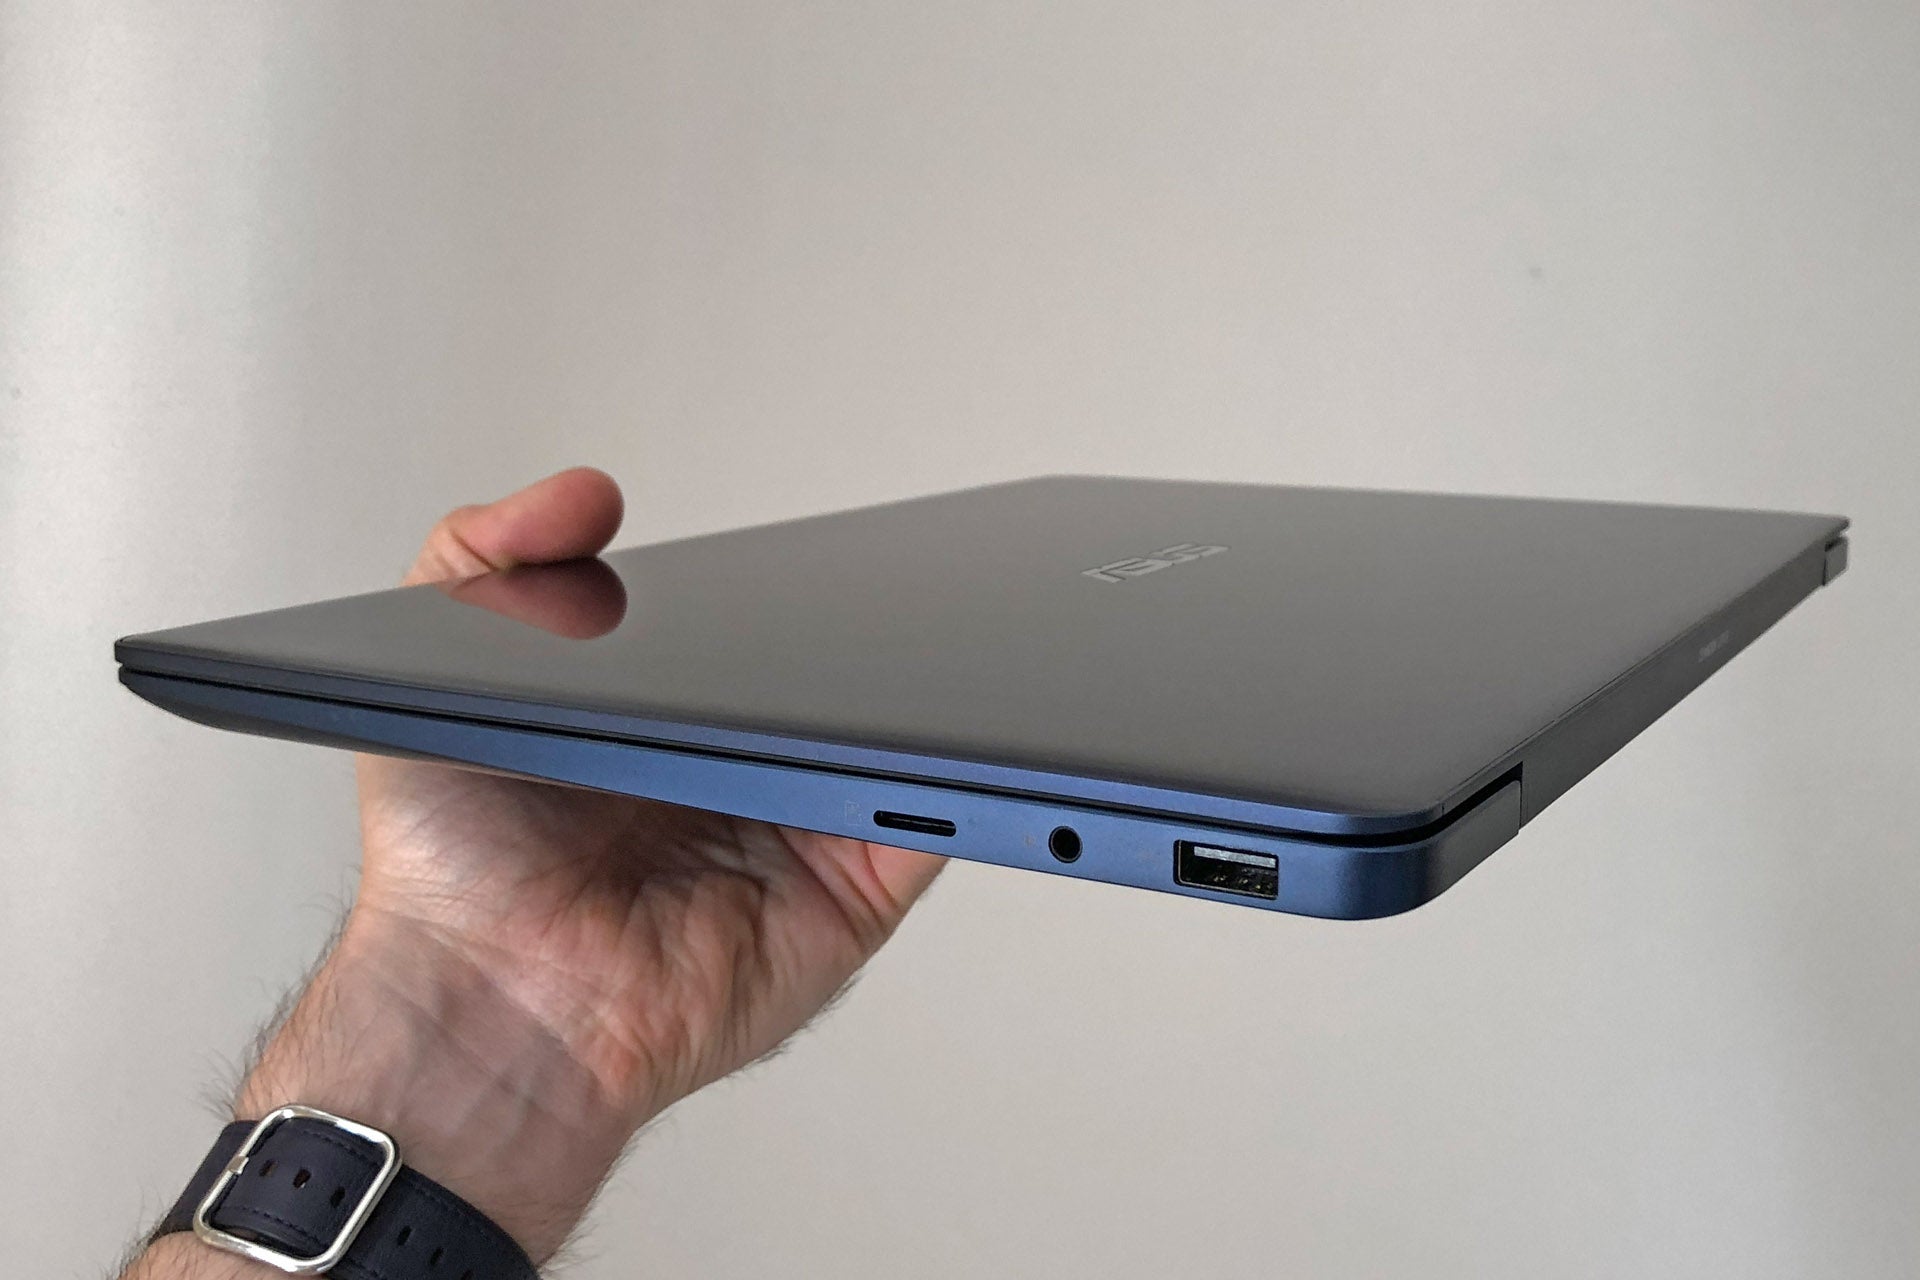 Asus ZenBook 13 UX331U Review | Trusted Reviews